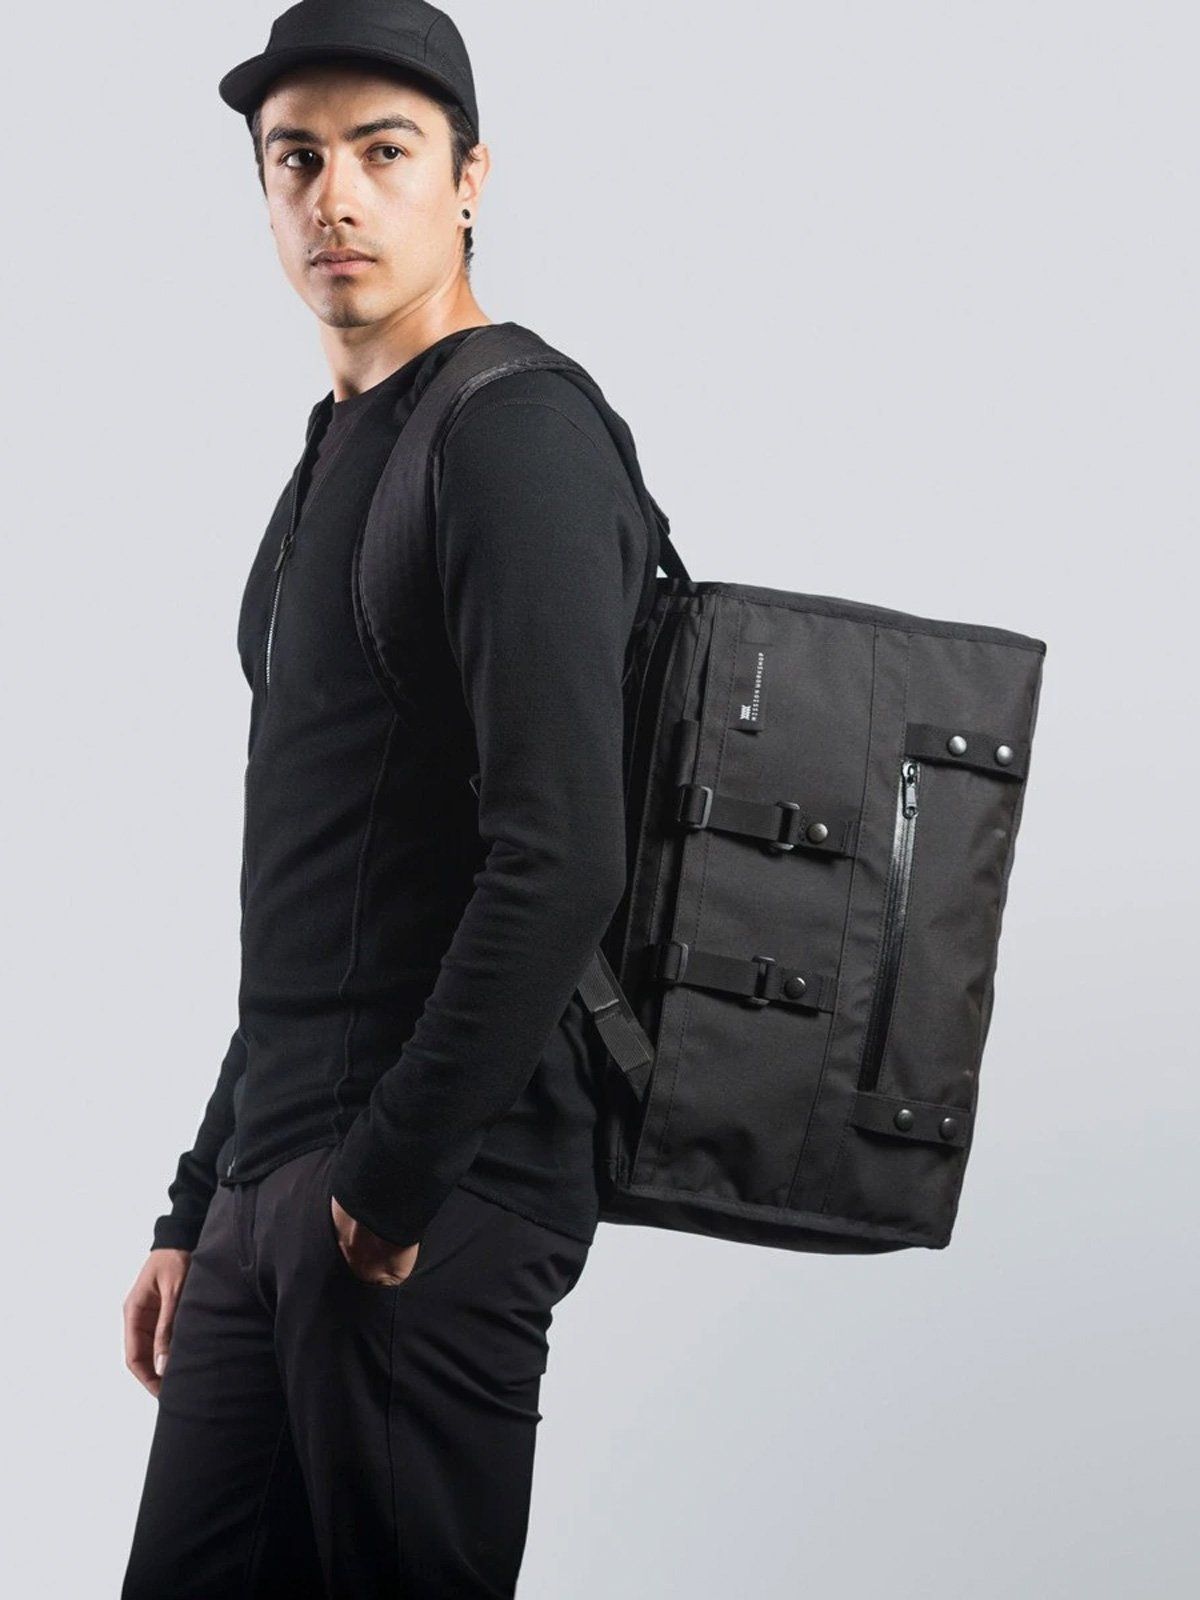 Transit : Duffle Backpack Harness by Mission Workshop - Säänkestävät laukut ja tekniset vaatteet - San Francisco & Los Angeles - Rakennettu kestämään - ikuisesti taattu